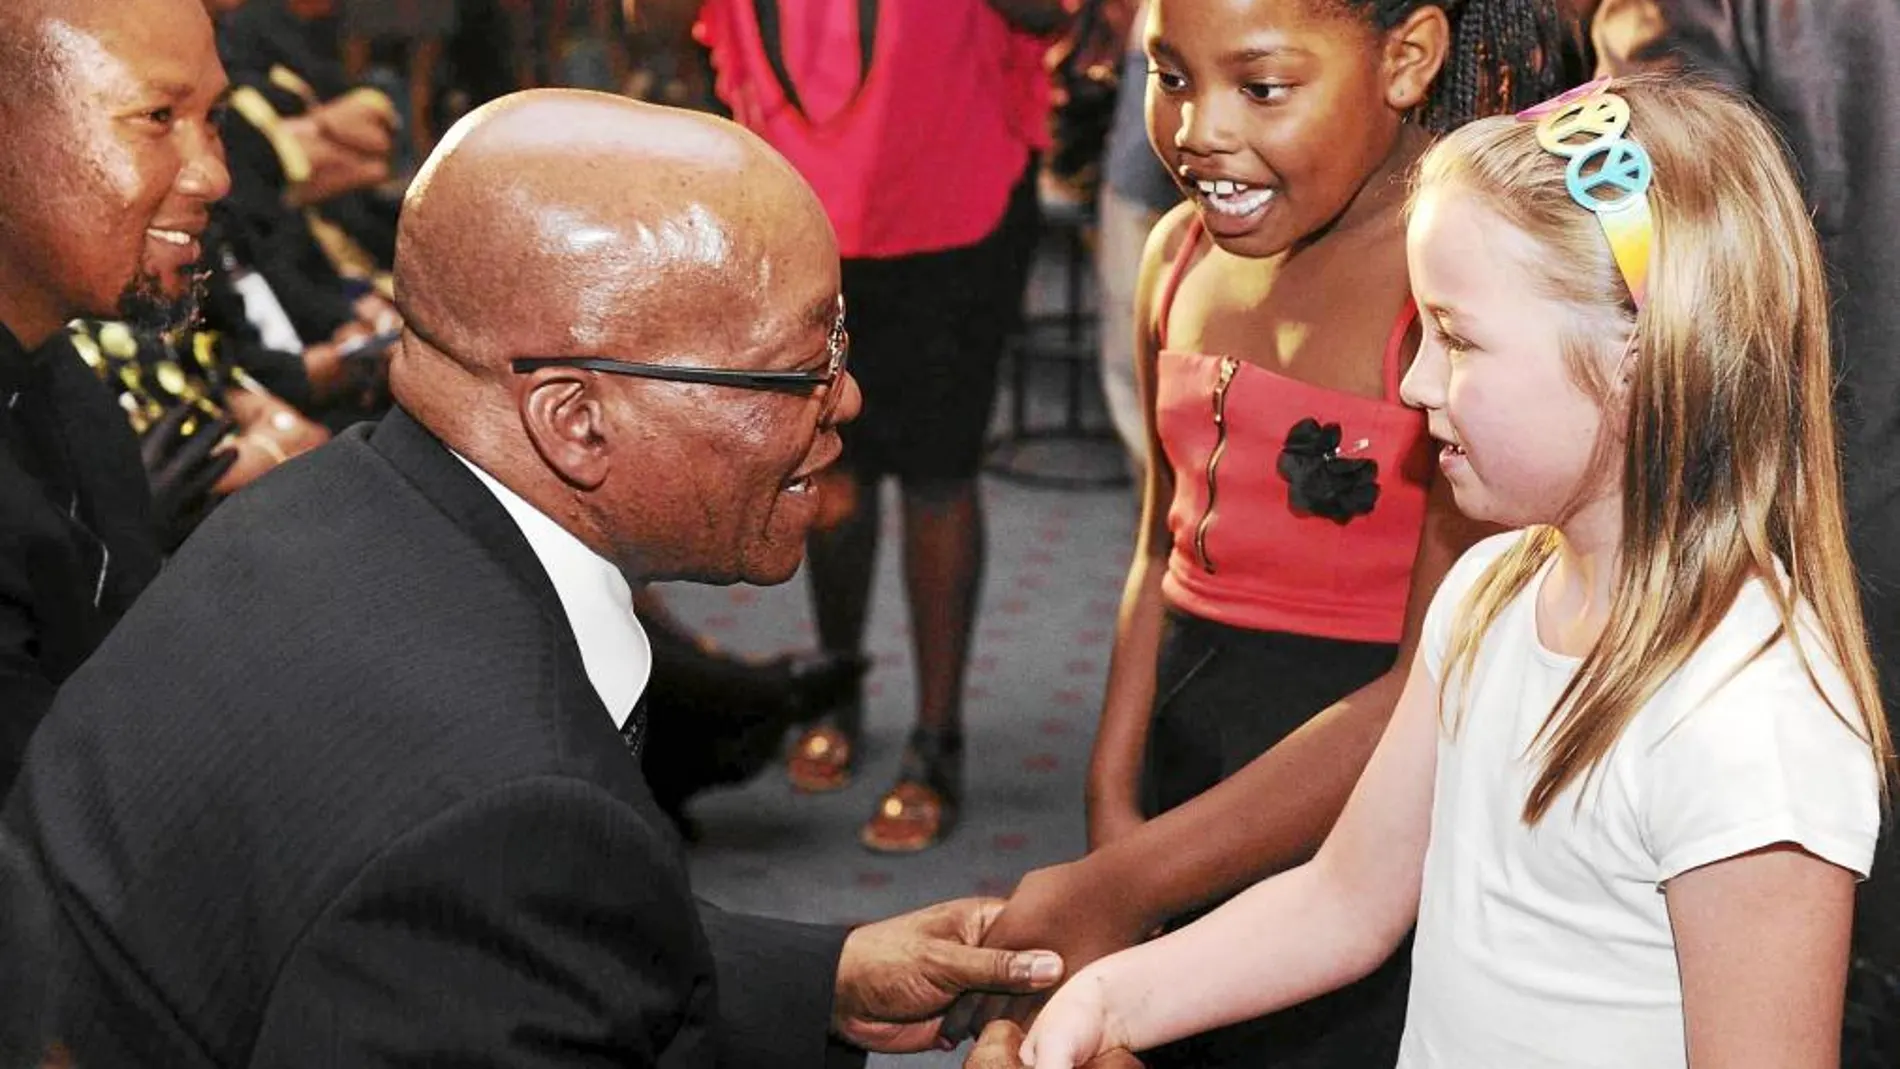 EN BUSCA DE LA FOTO. El presidente surafricano, Jacob Zuma, saluda a unas niñas en la iglesia metodista de Bryanston, ayer en Johannesburgo